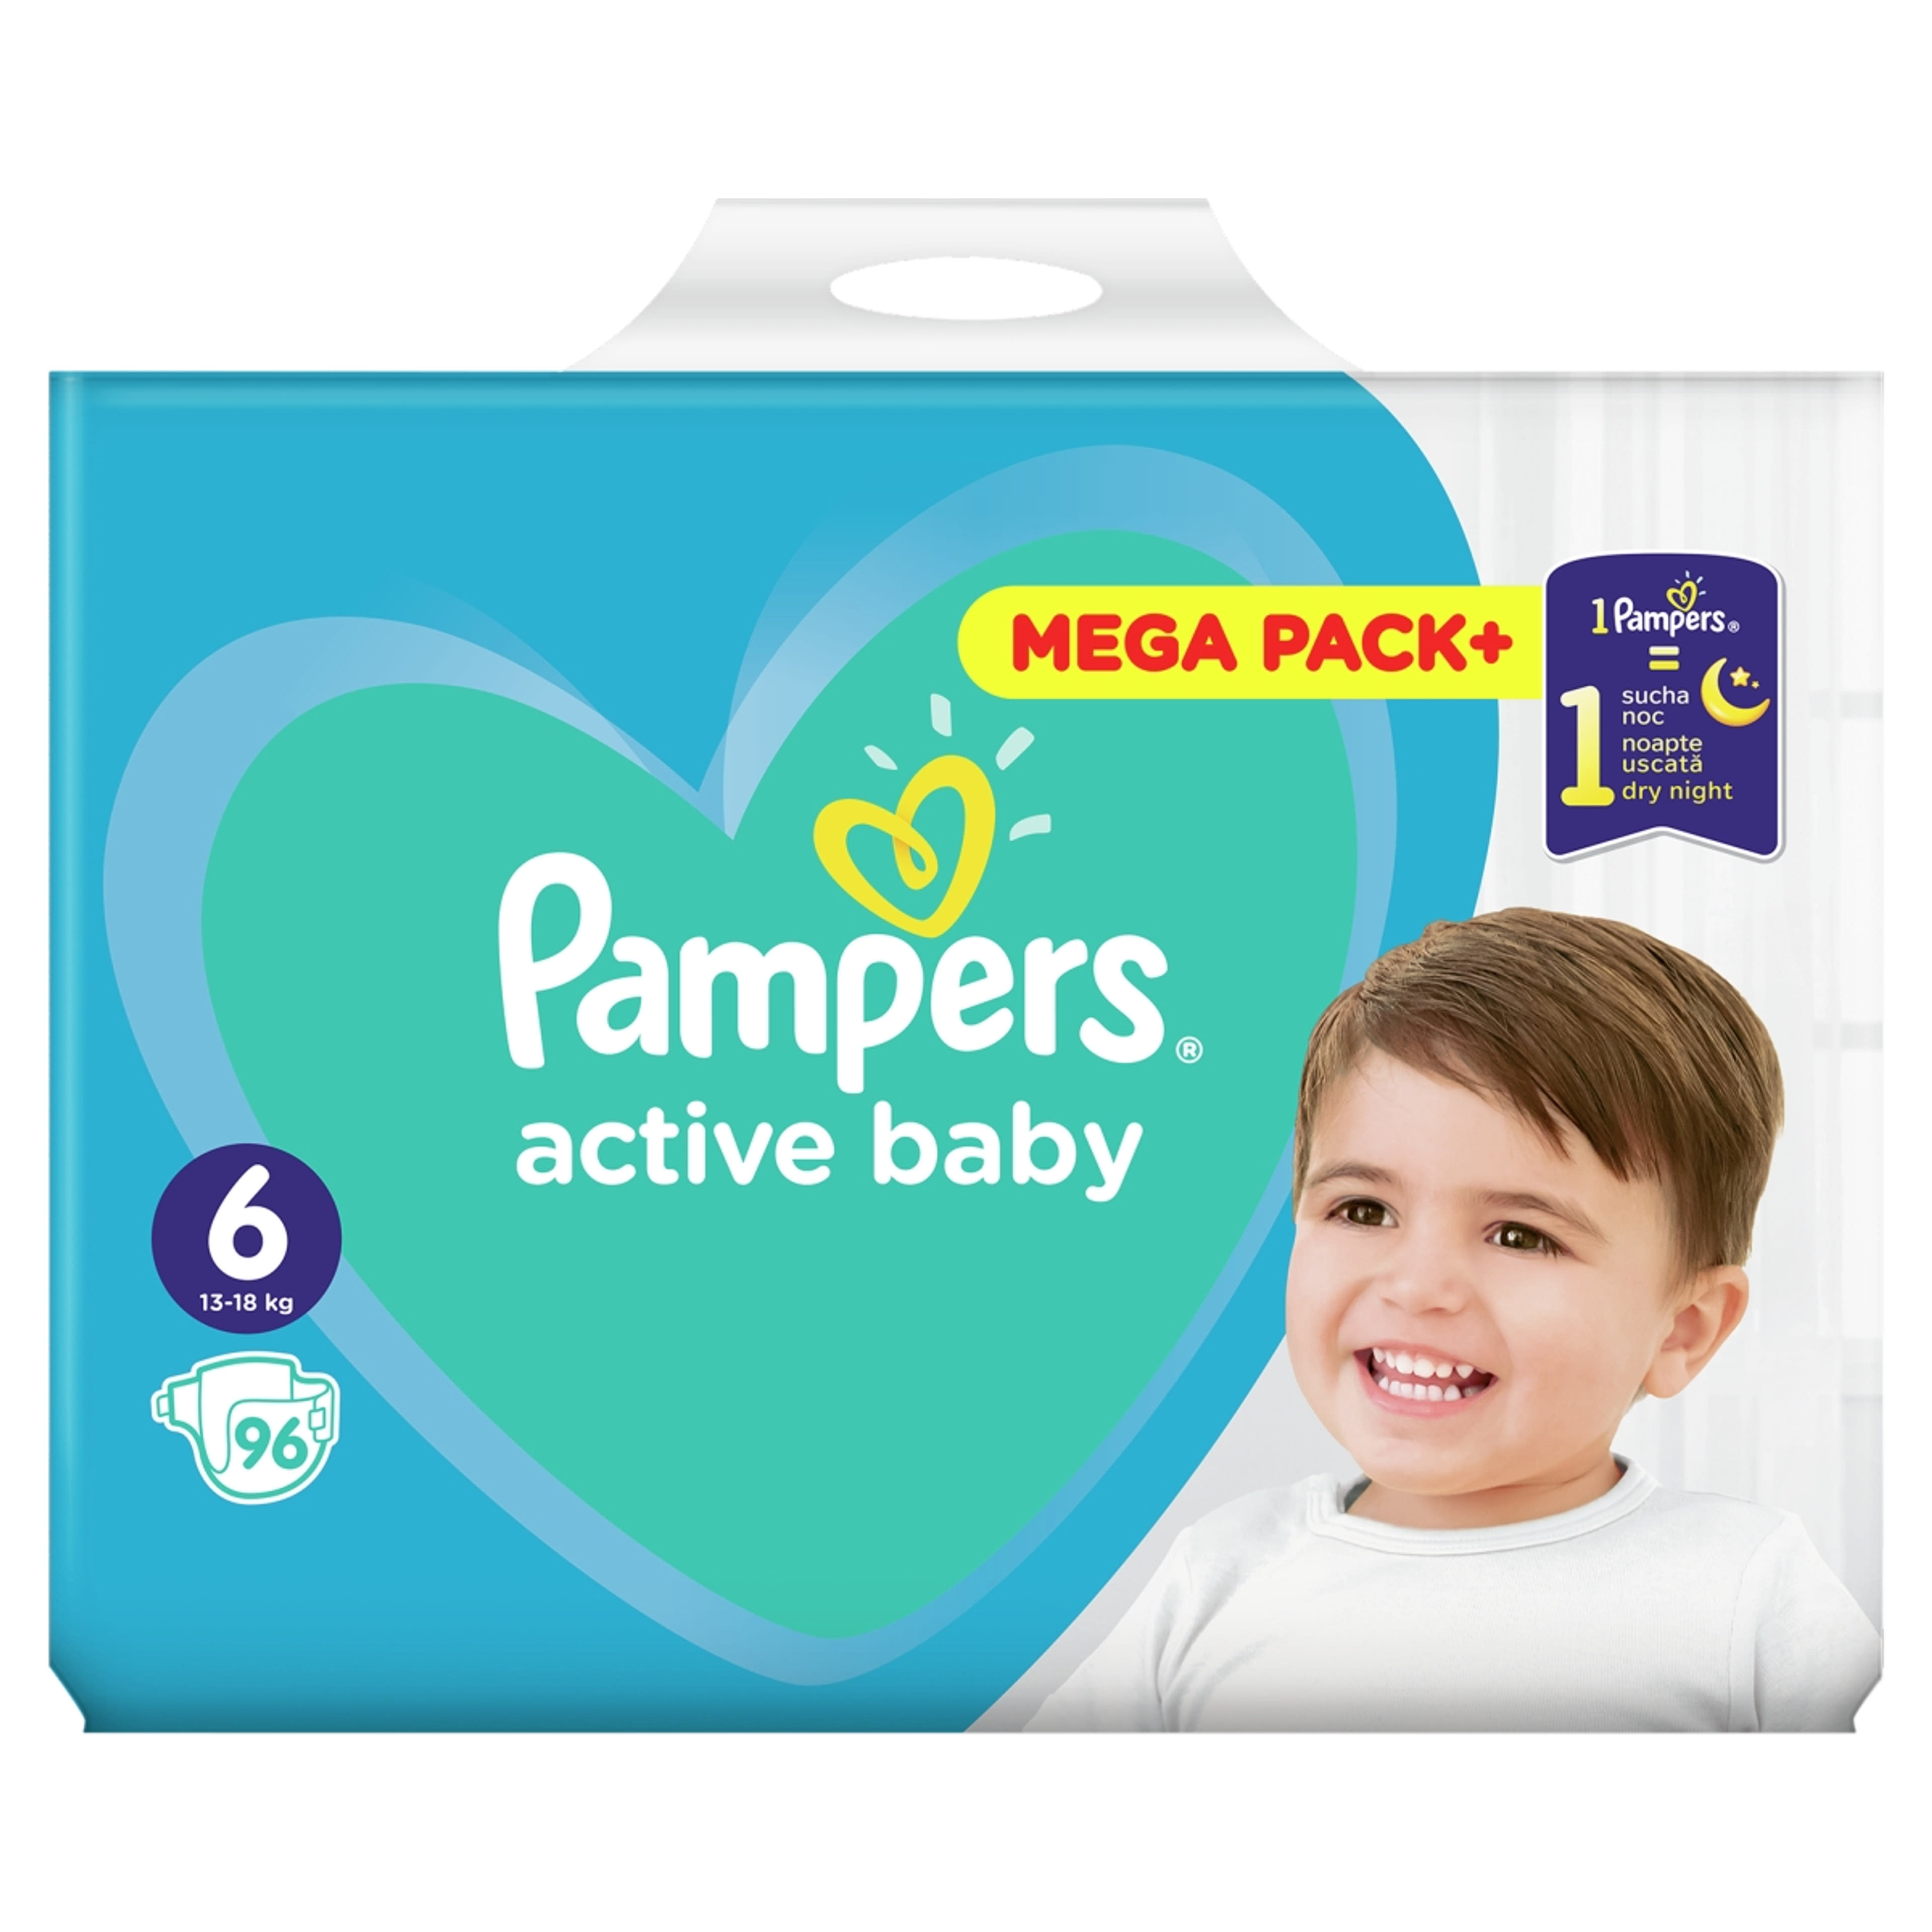 Pampers active baby mega pack+ 6-os 13-18kg - 96 db-1